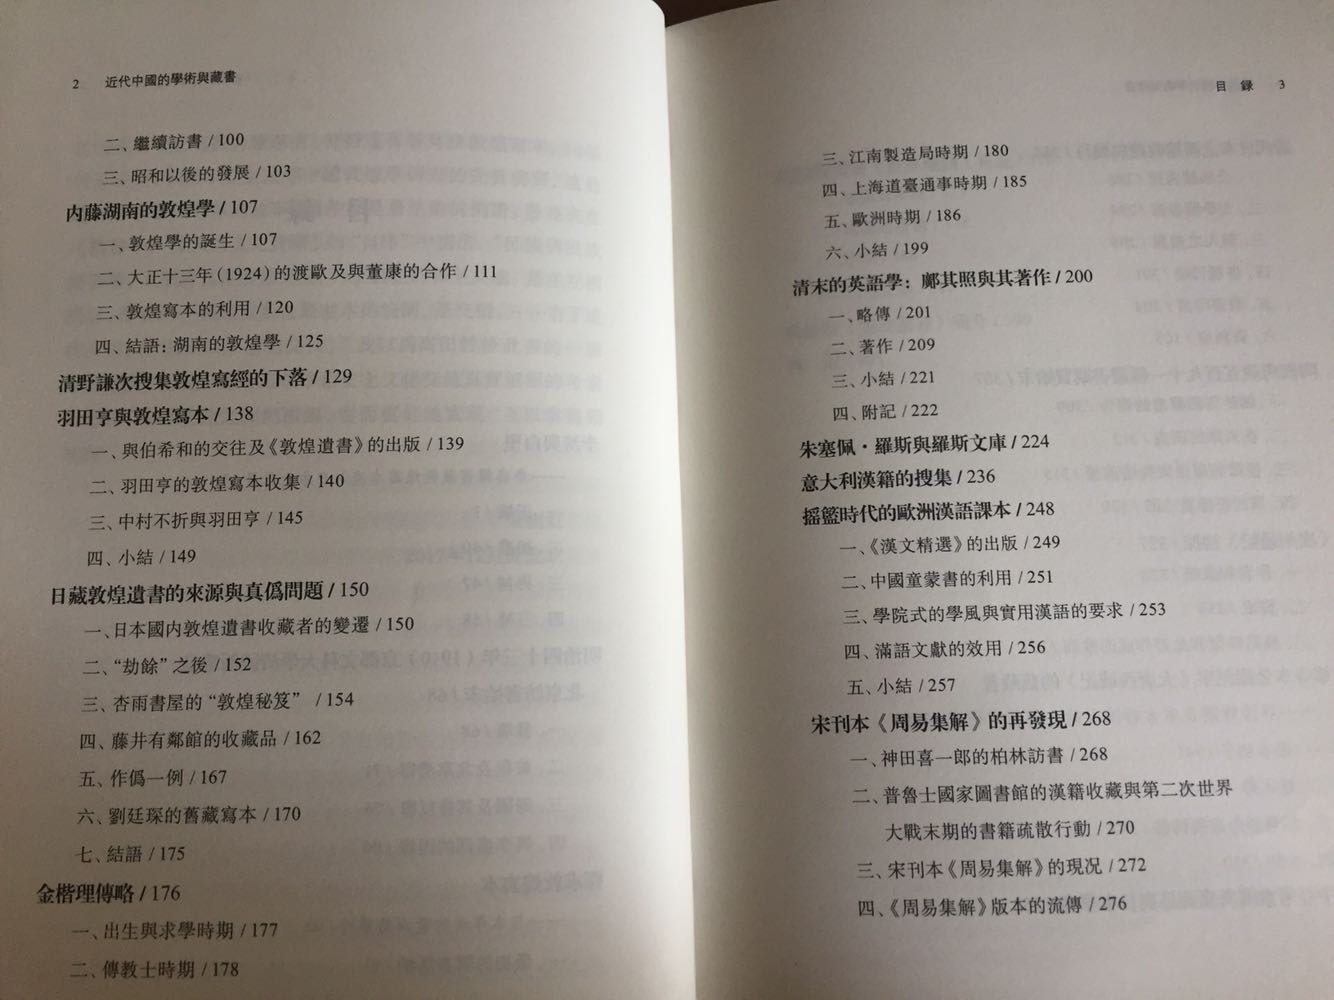 高田先生来中国工作后出的第一本书，从敦煌写本到域外汉籍到海外汉学和汉学家。最近公众号上刚开始推，618立马收入。